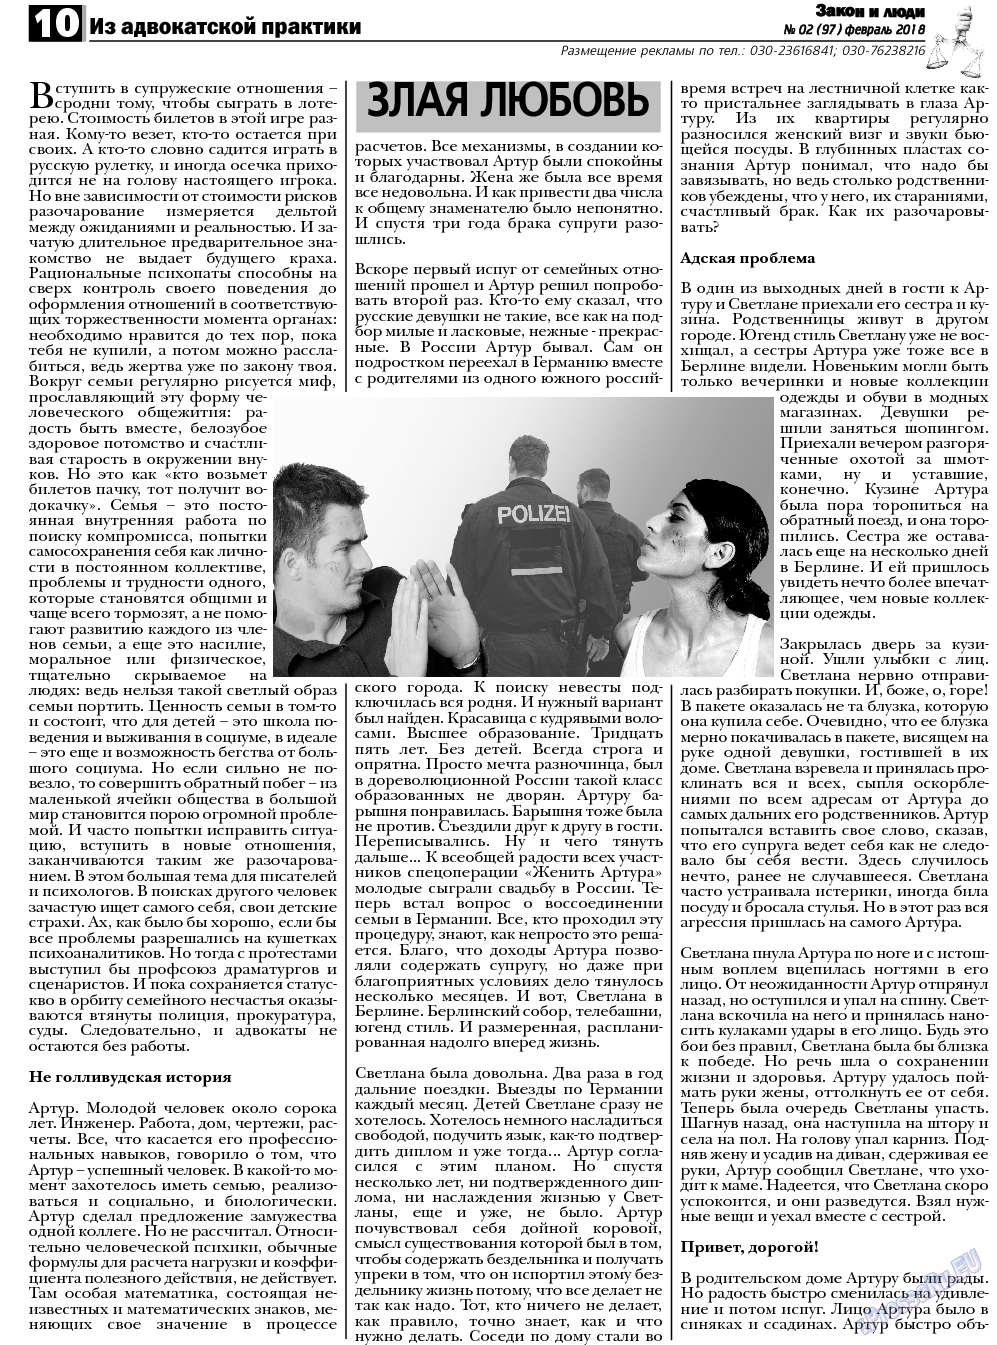 Закон и люди, газета. 2018 №2 стр.10